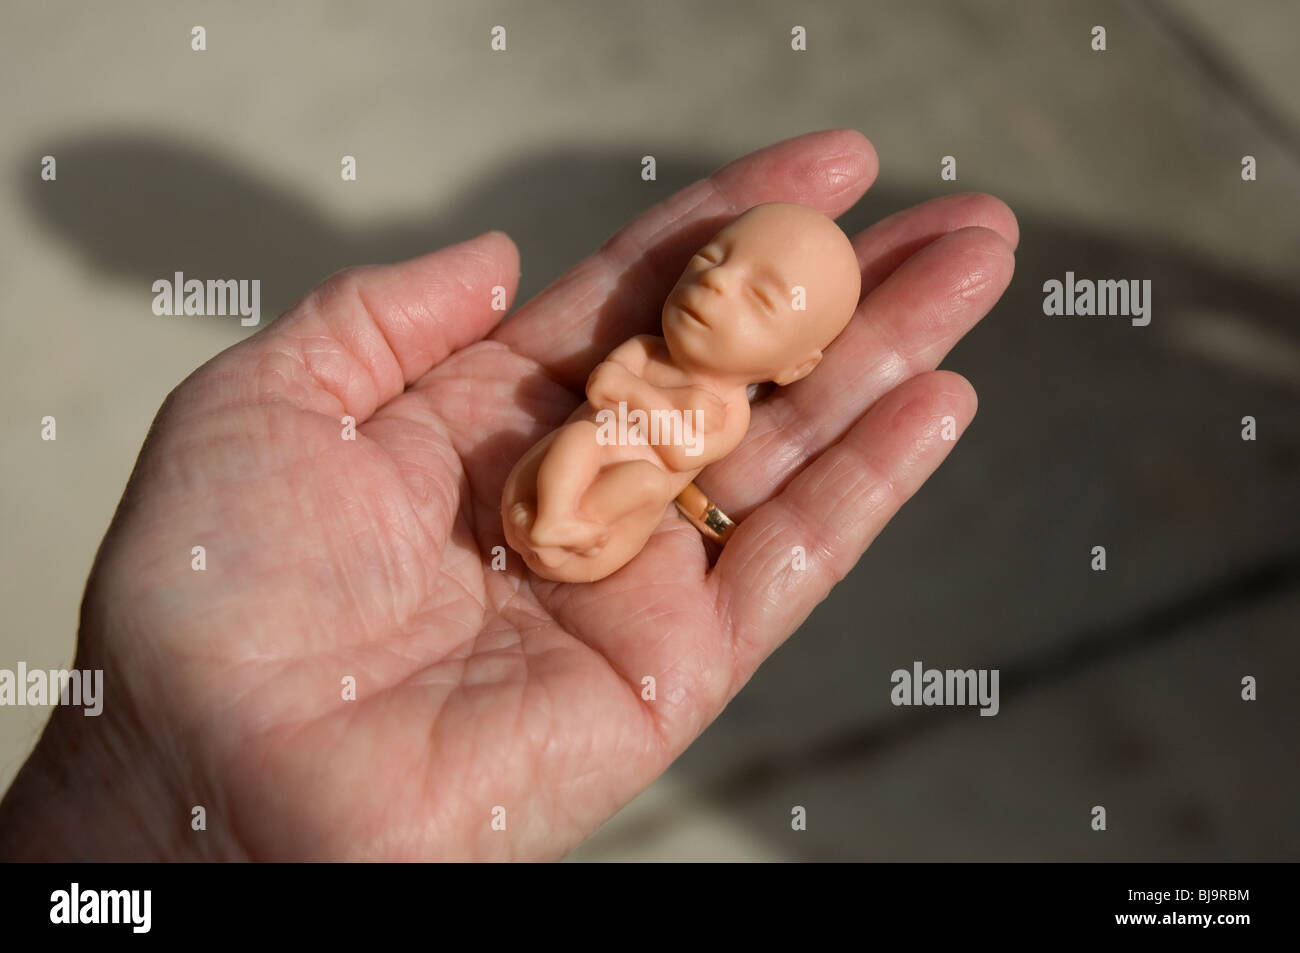 model of 12 week old fetus held in female hand Stock Photo